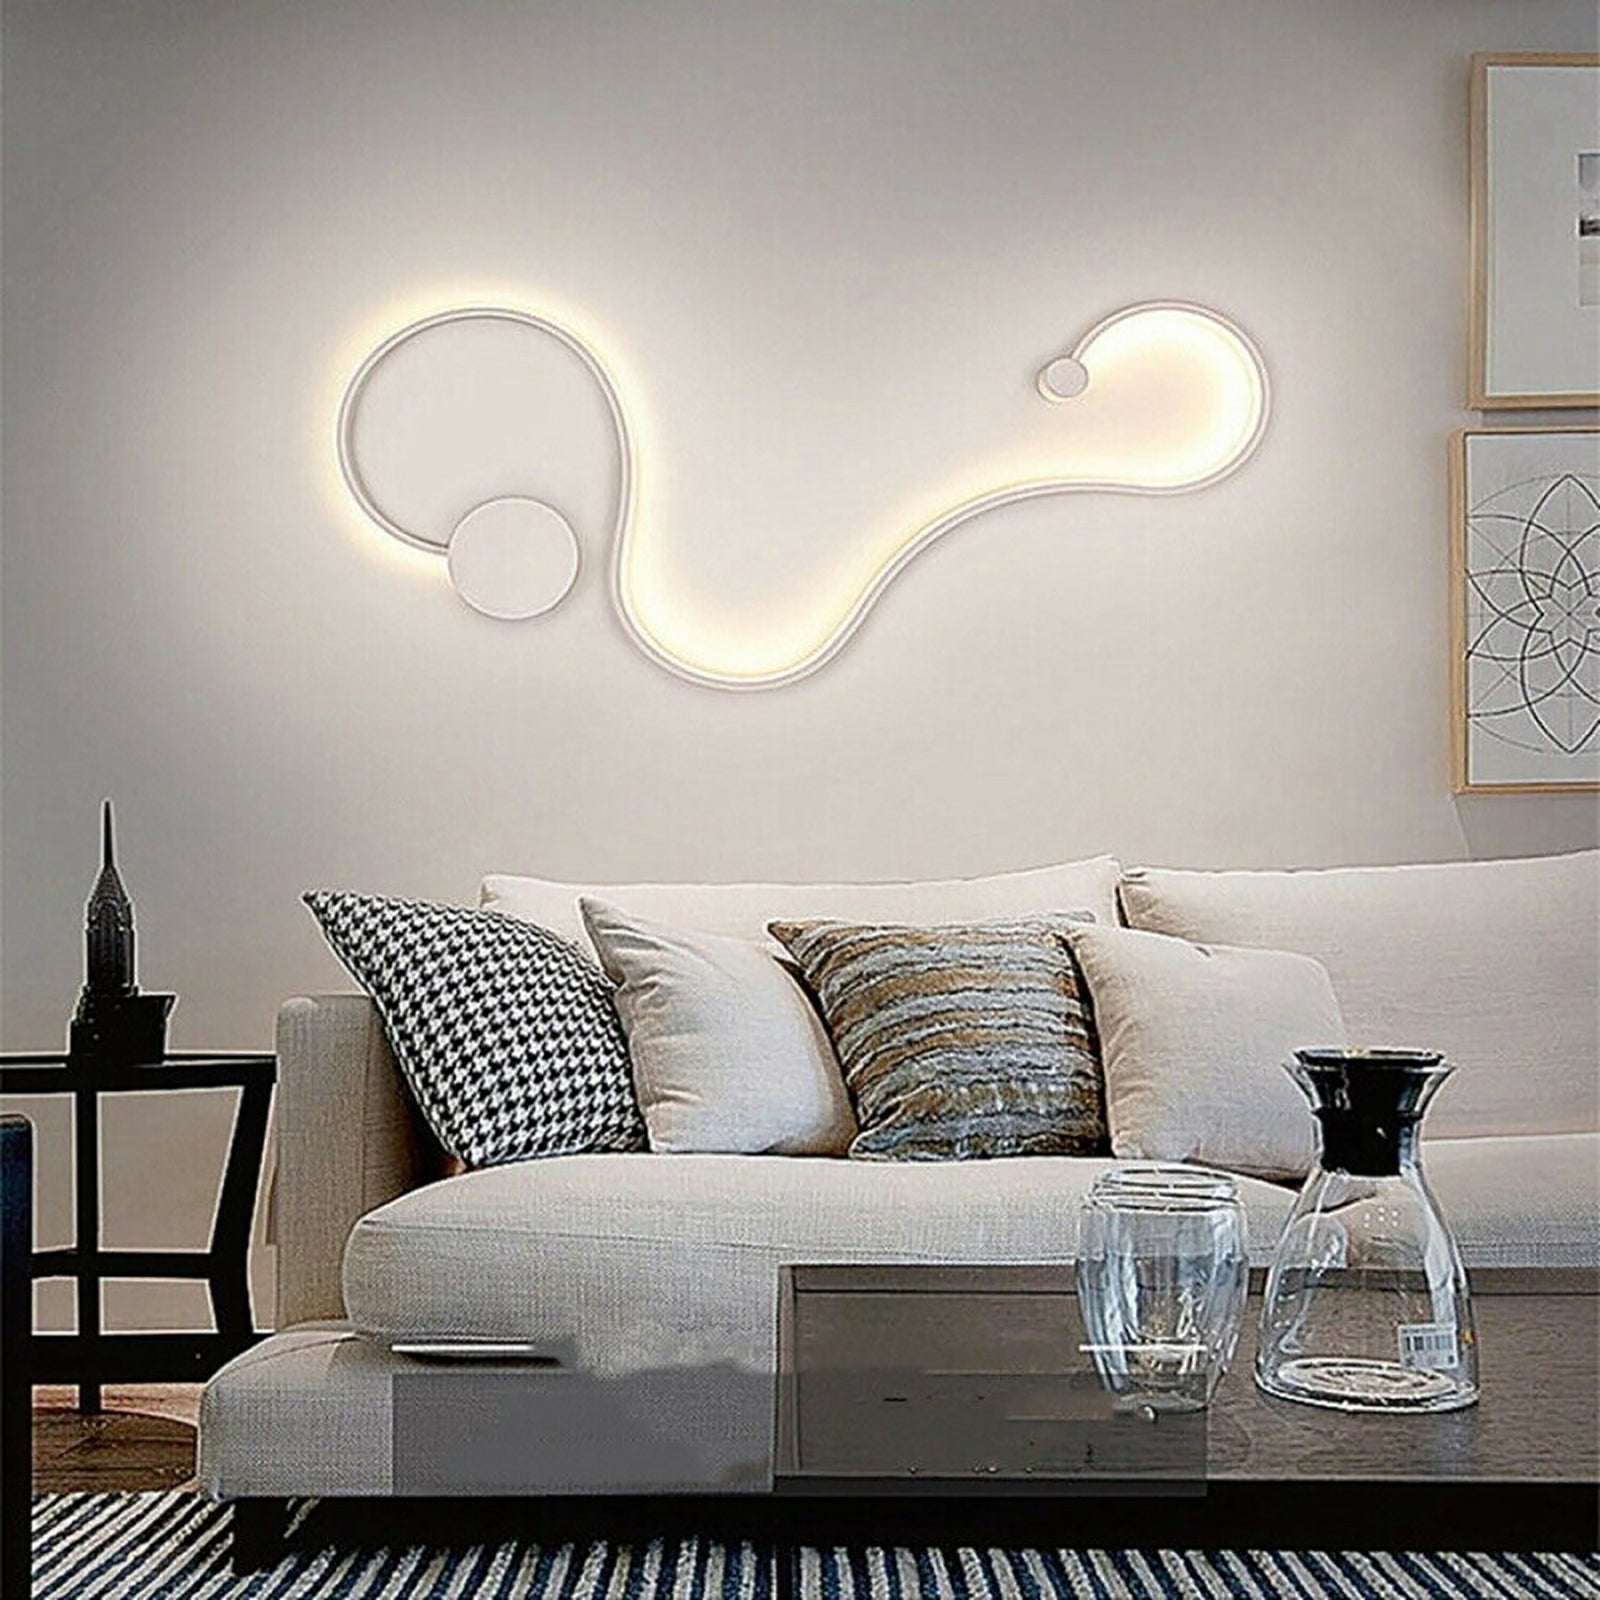 Applique murale moderne à LED 28W blanc lampe incurvée serpent lumière mur  mur salon chambre 230V